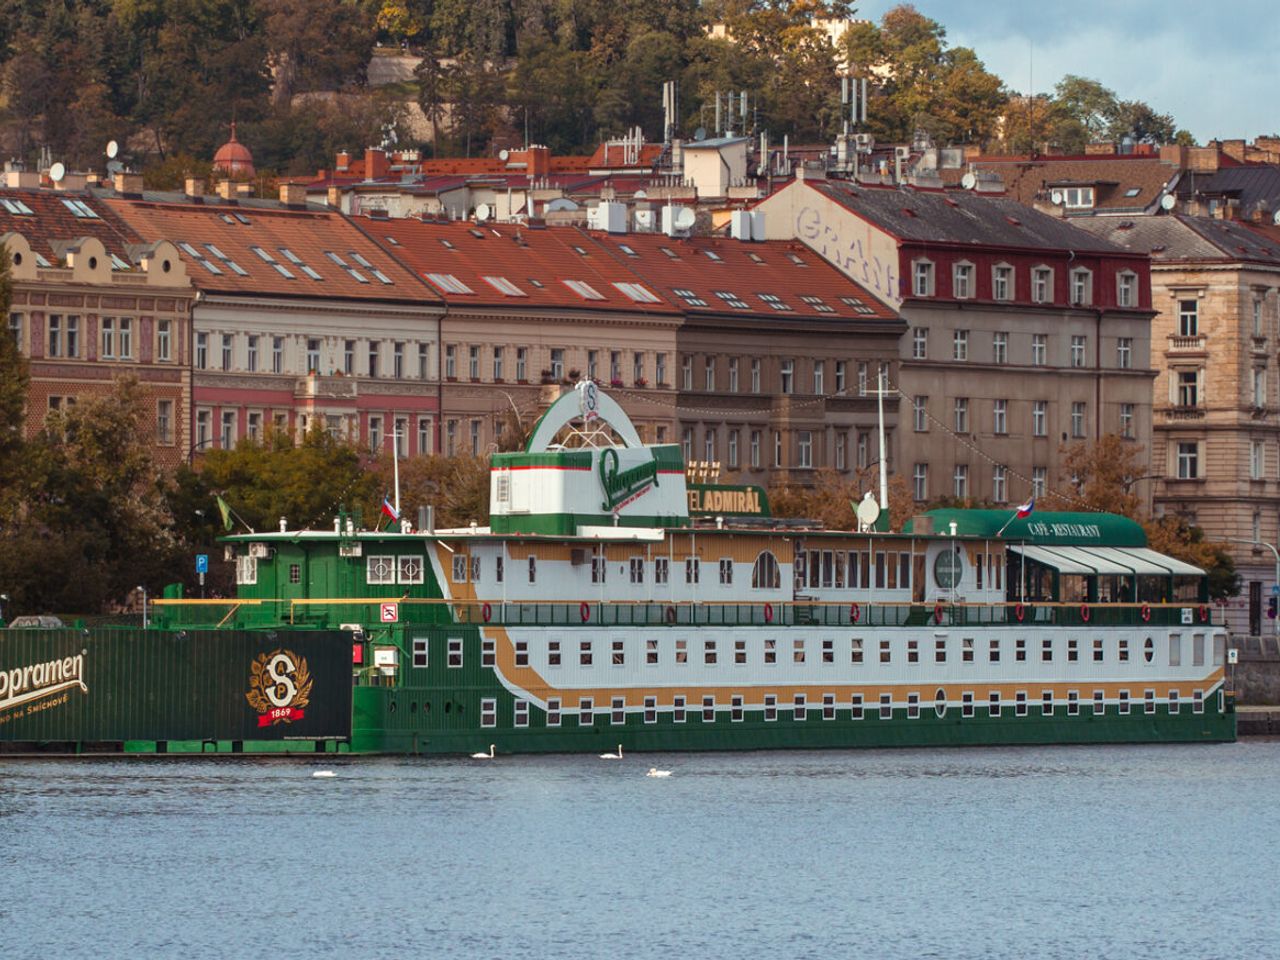 3 Tage Prag im Hotelboot auf der Moldau